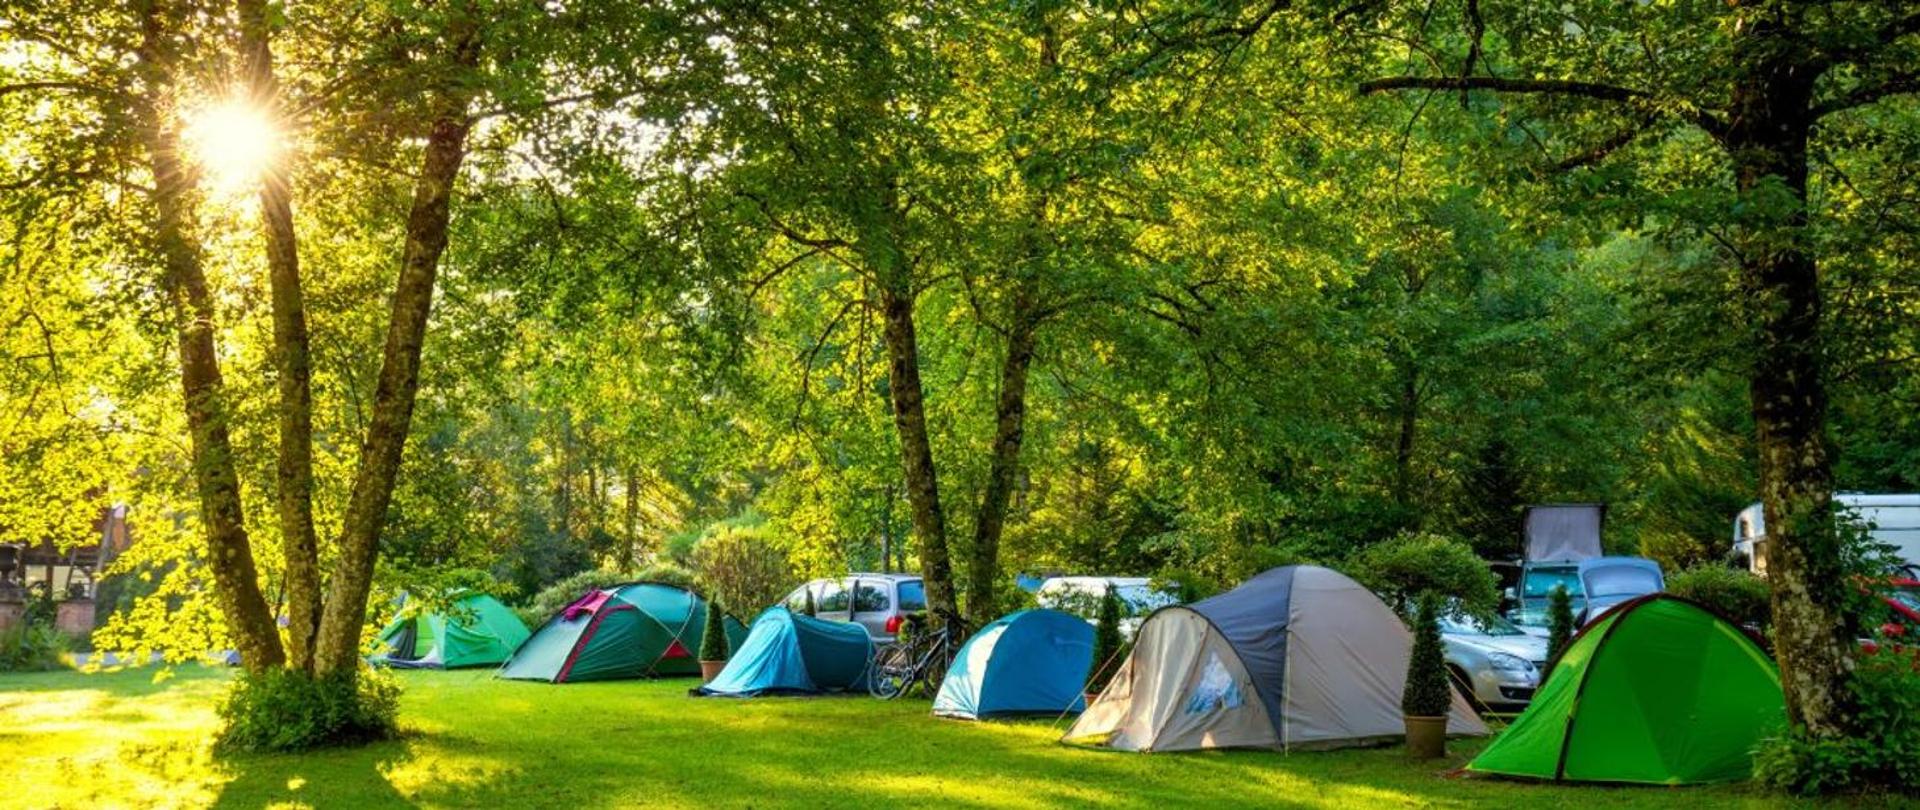 Pole namiotowe pod drzewami, kilka namiotów